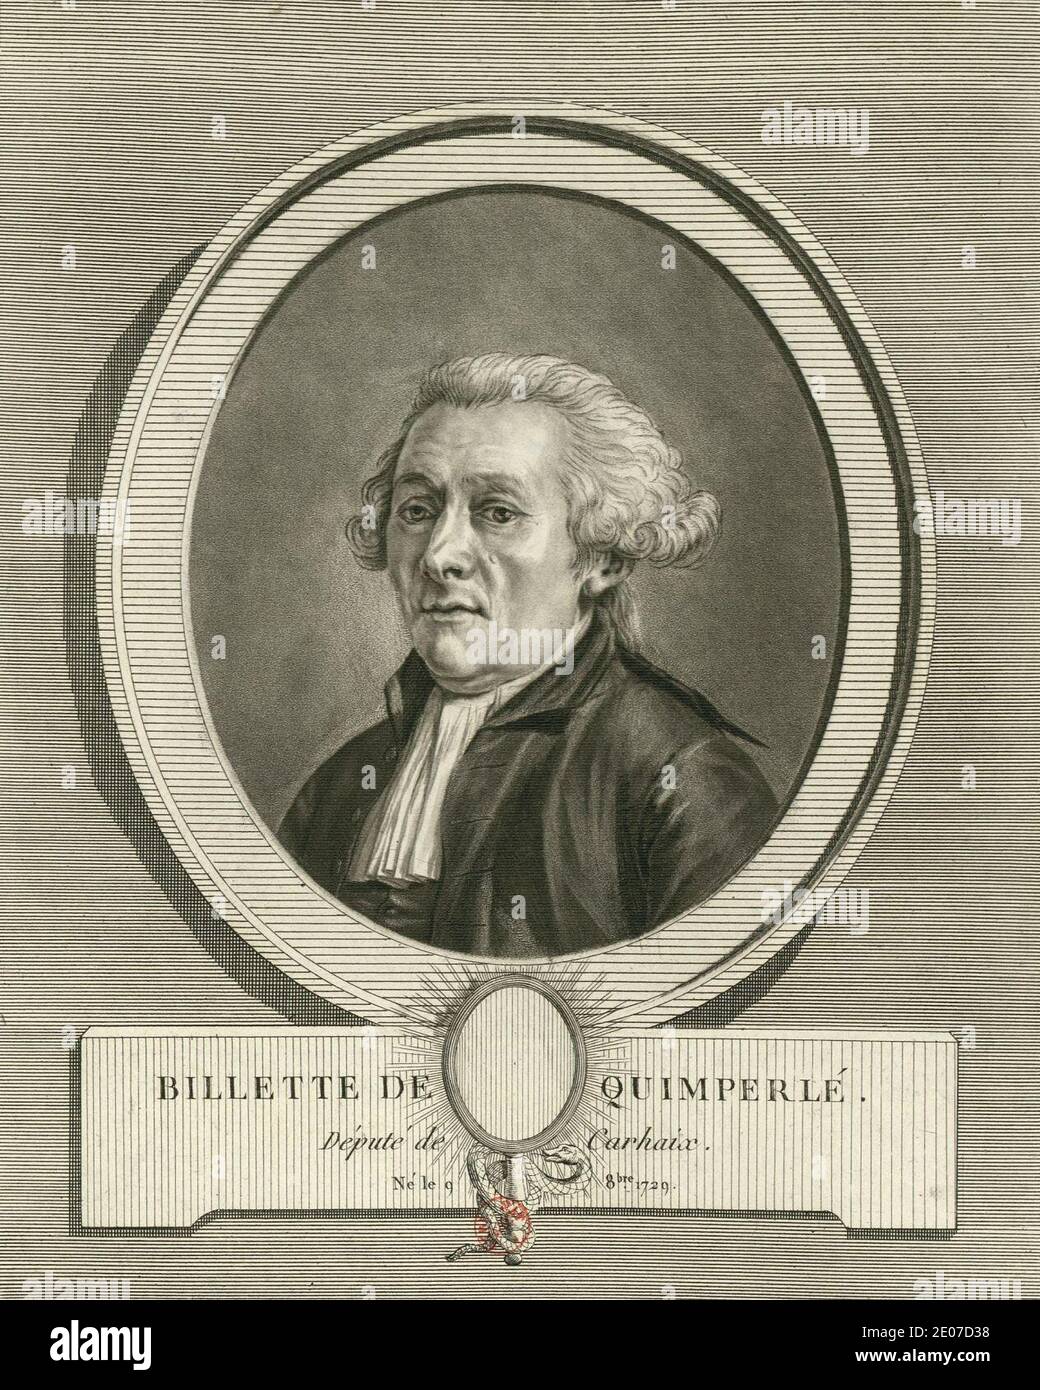 Vincent Samuel Billette de Villeroche (1729-1812). Stock Photo